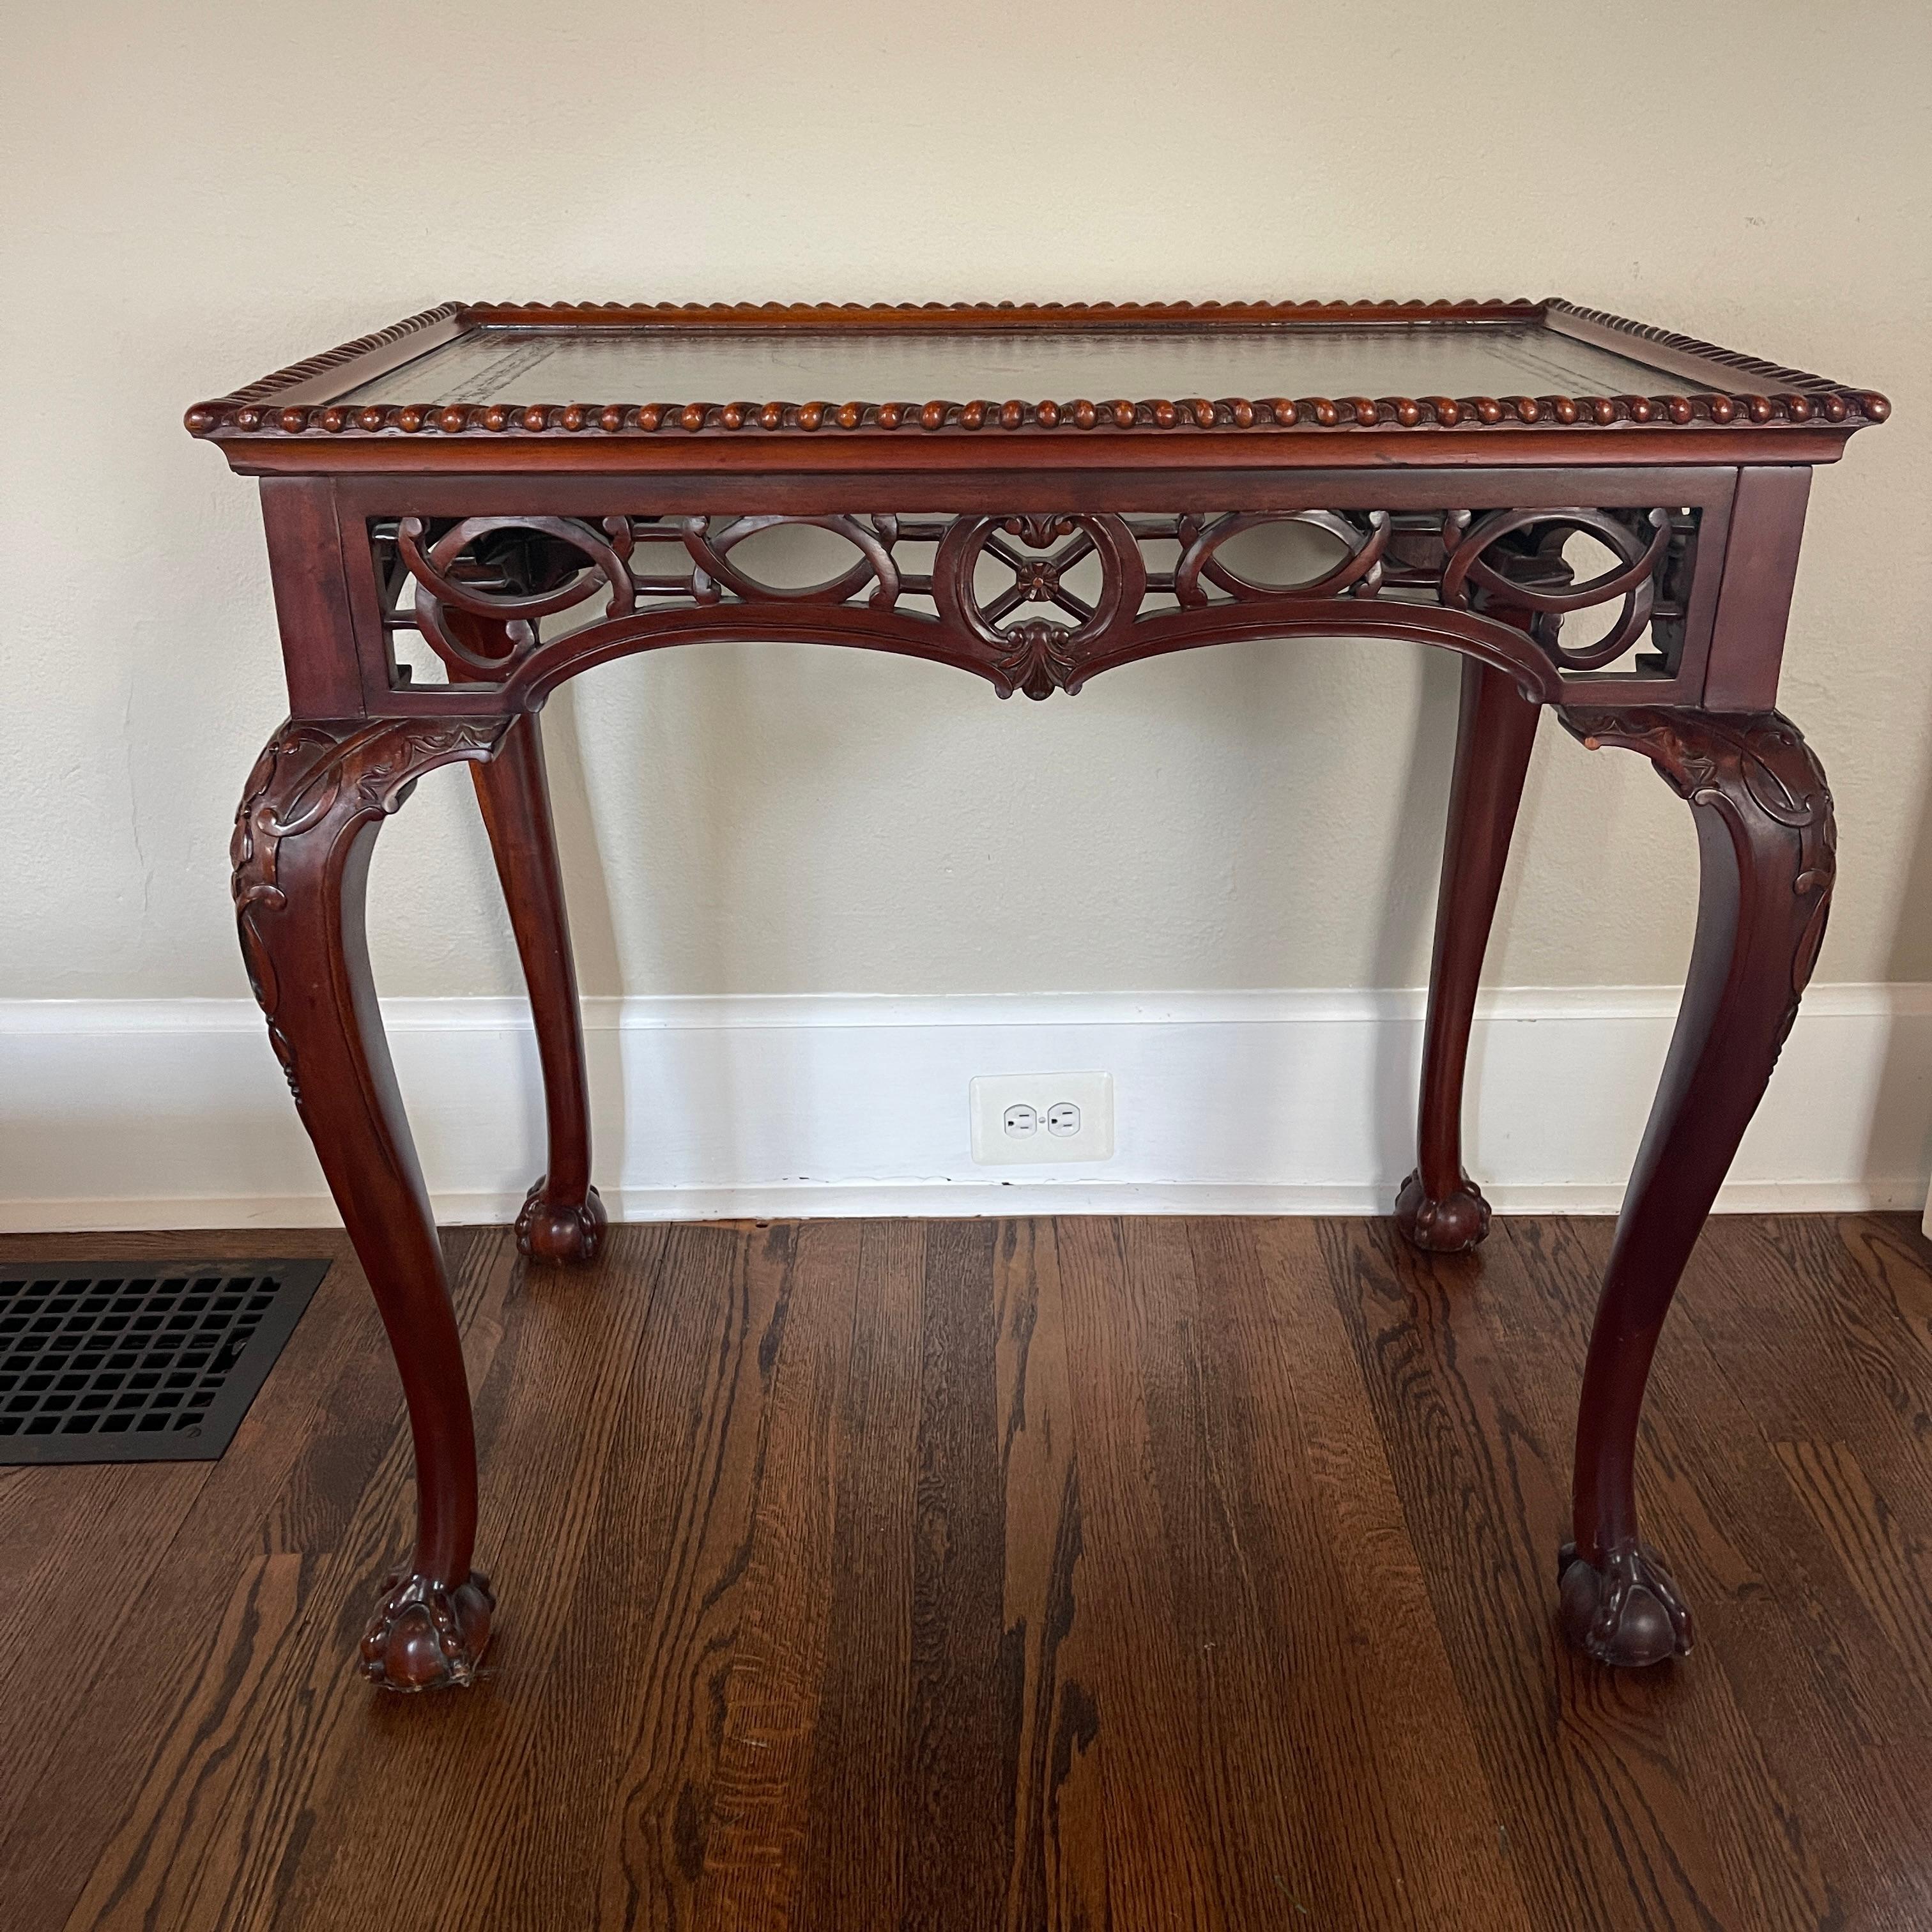 Dans le style de la table d'appoint classique Thomas Chippendale du XIXe siècle, sculptée en frettes. Cette jolie table est parfaite comme table d'extrémité ou table d'appoint près d'un canapé ou d'un fauteuil. Le dessus en cuir incrusté est en bon